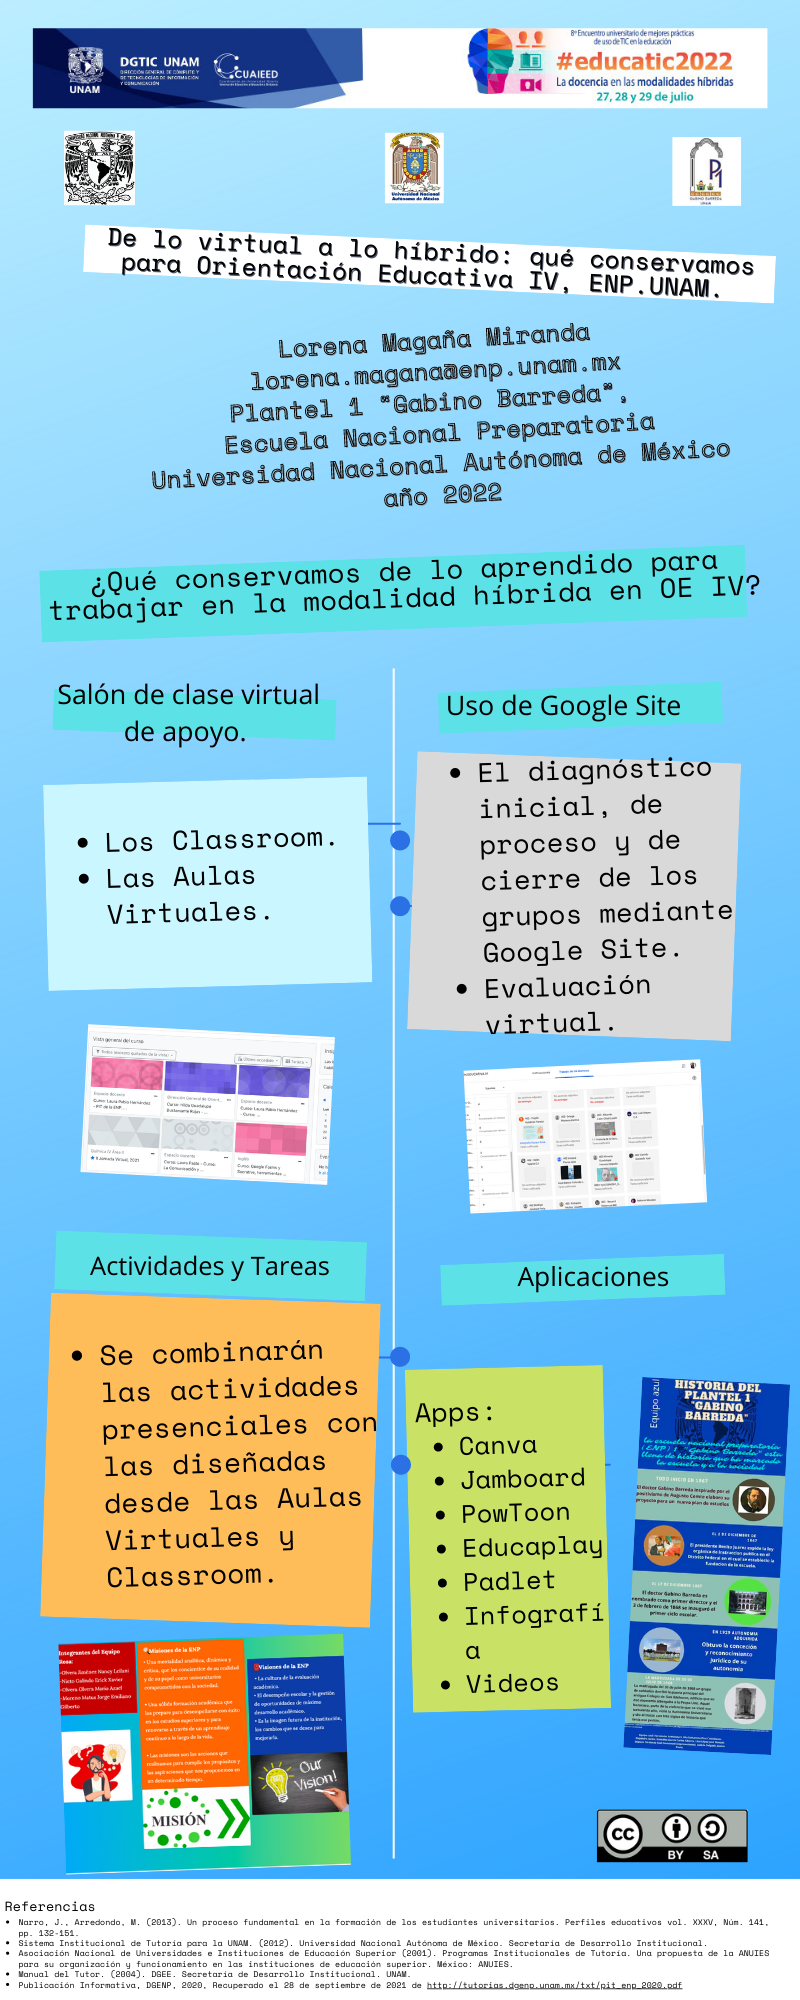 De lo virtual a lo híbrido: qué conservamos para Orientación Educativa IV, ENP.UNAM